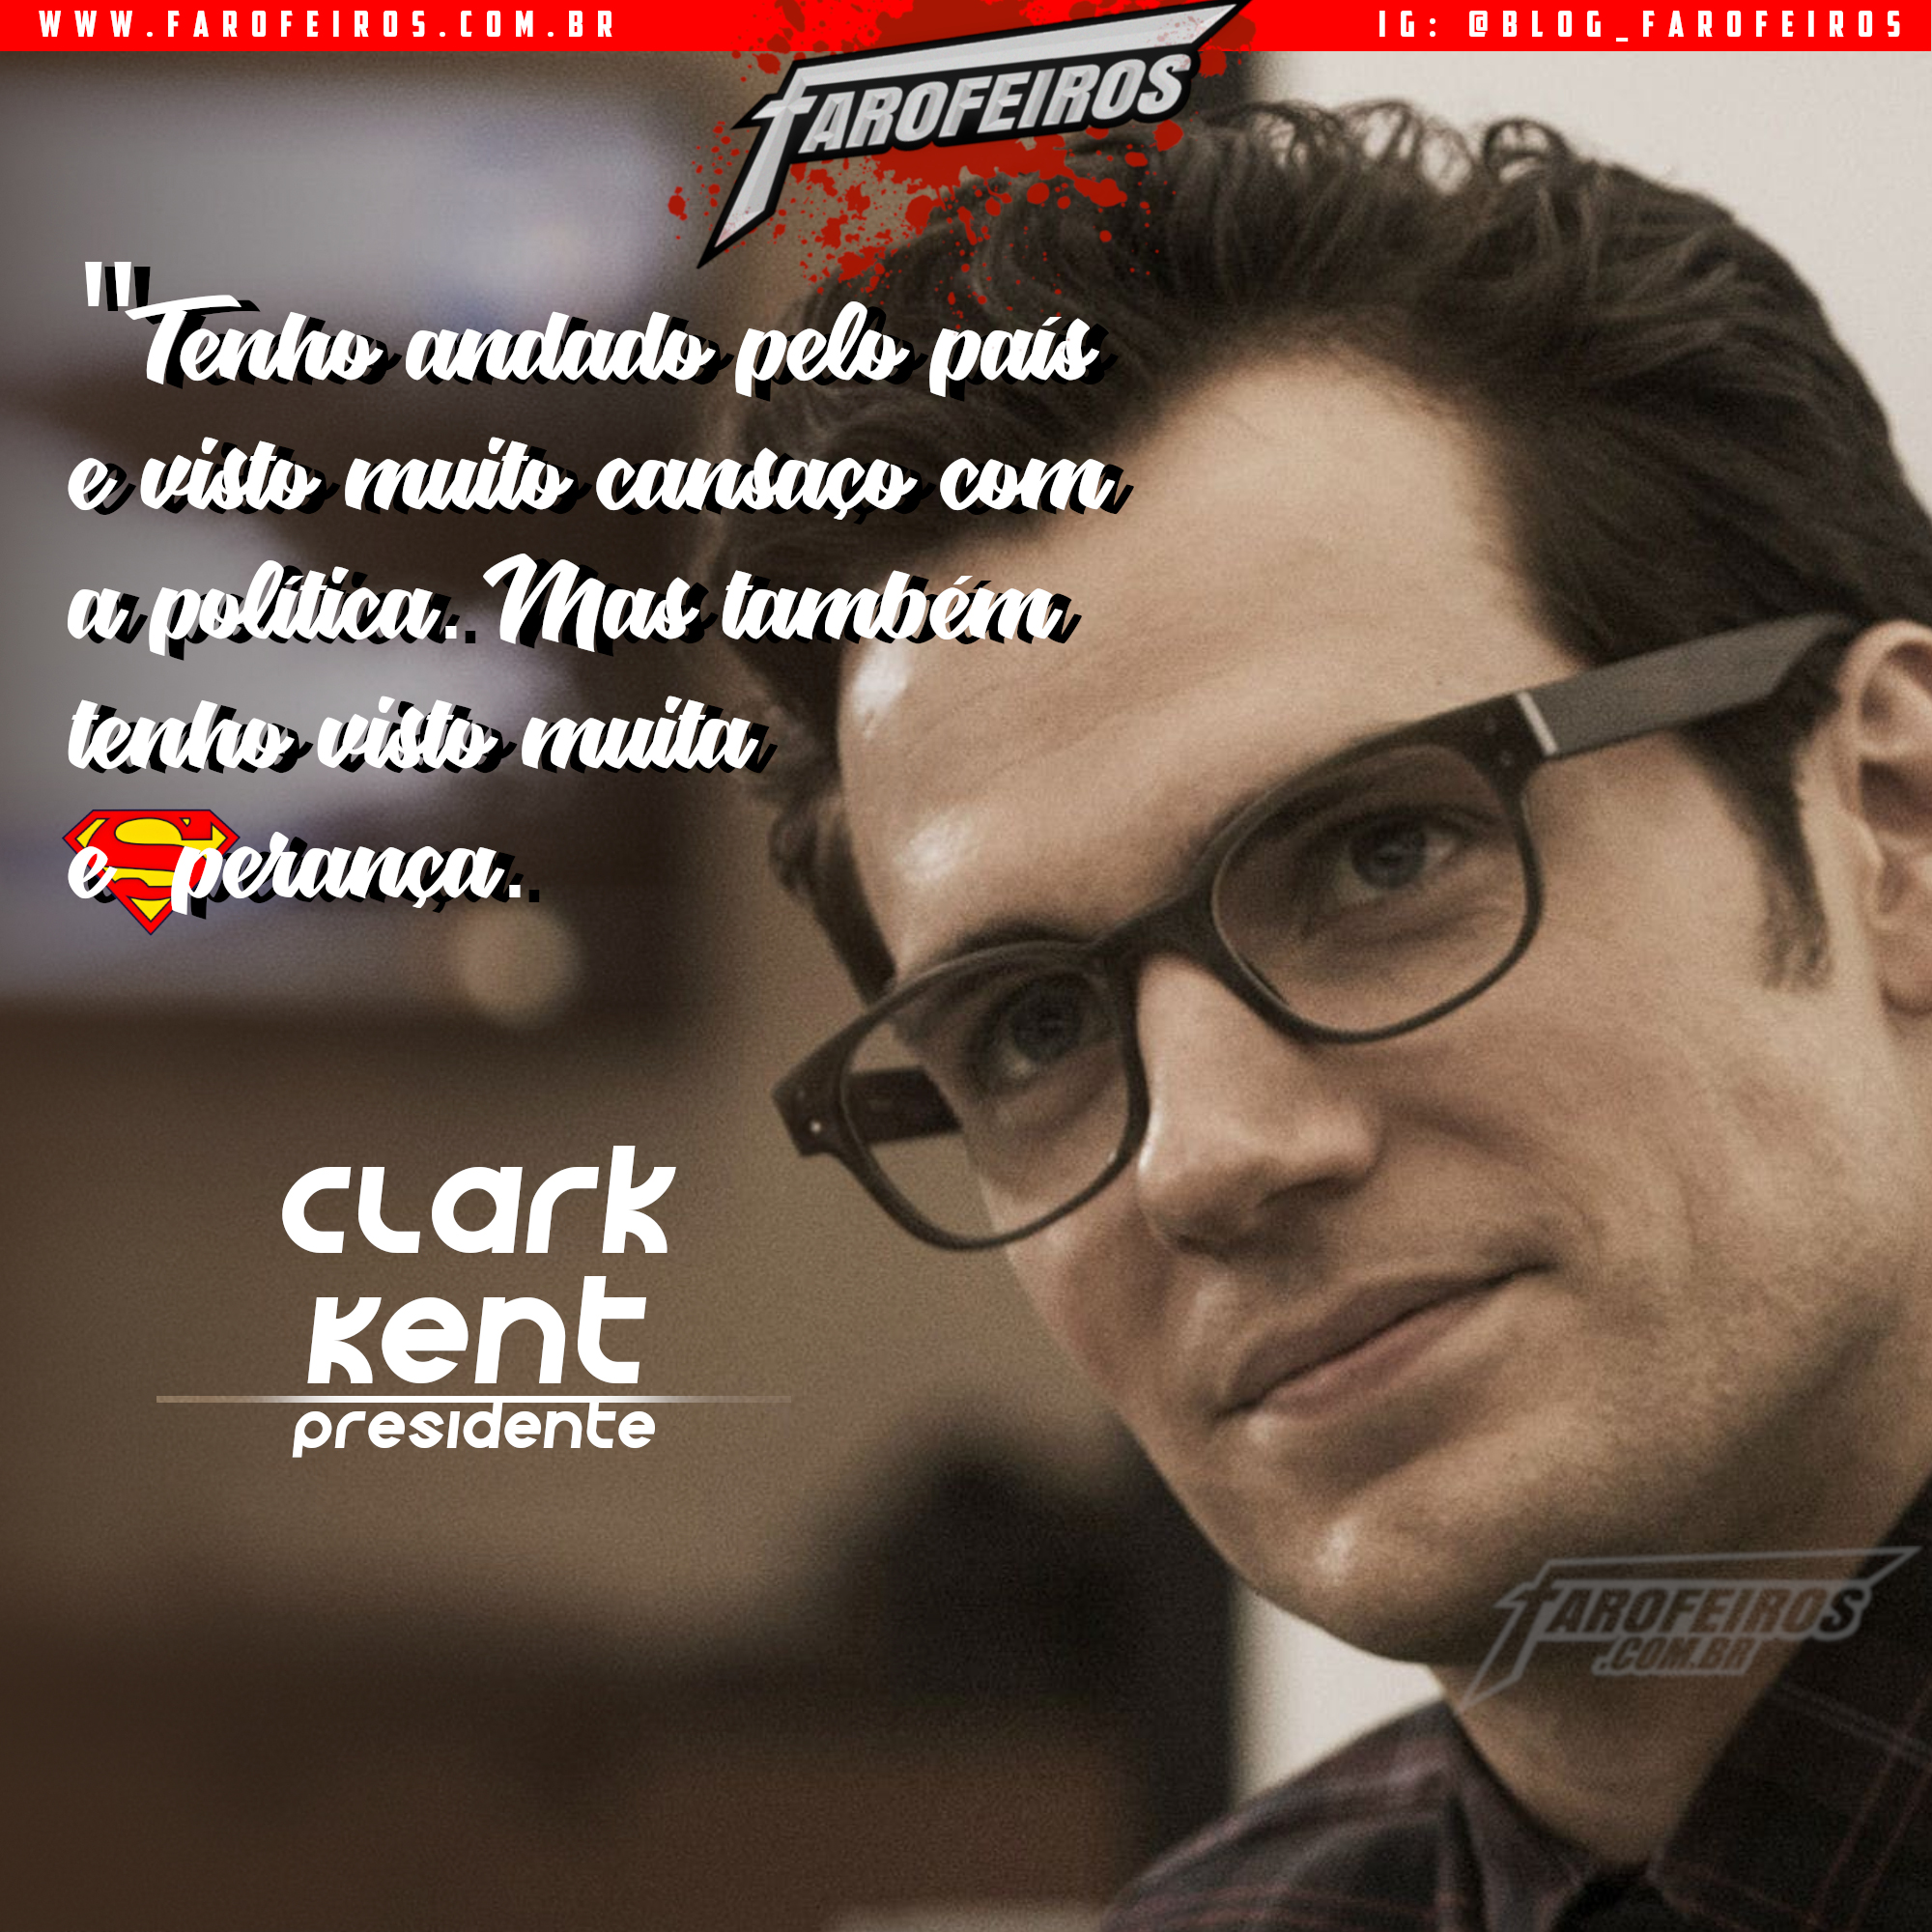 Super Eleições 2018 - Farofeiros com br - Clark Kent